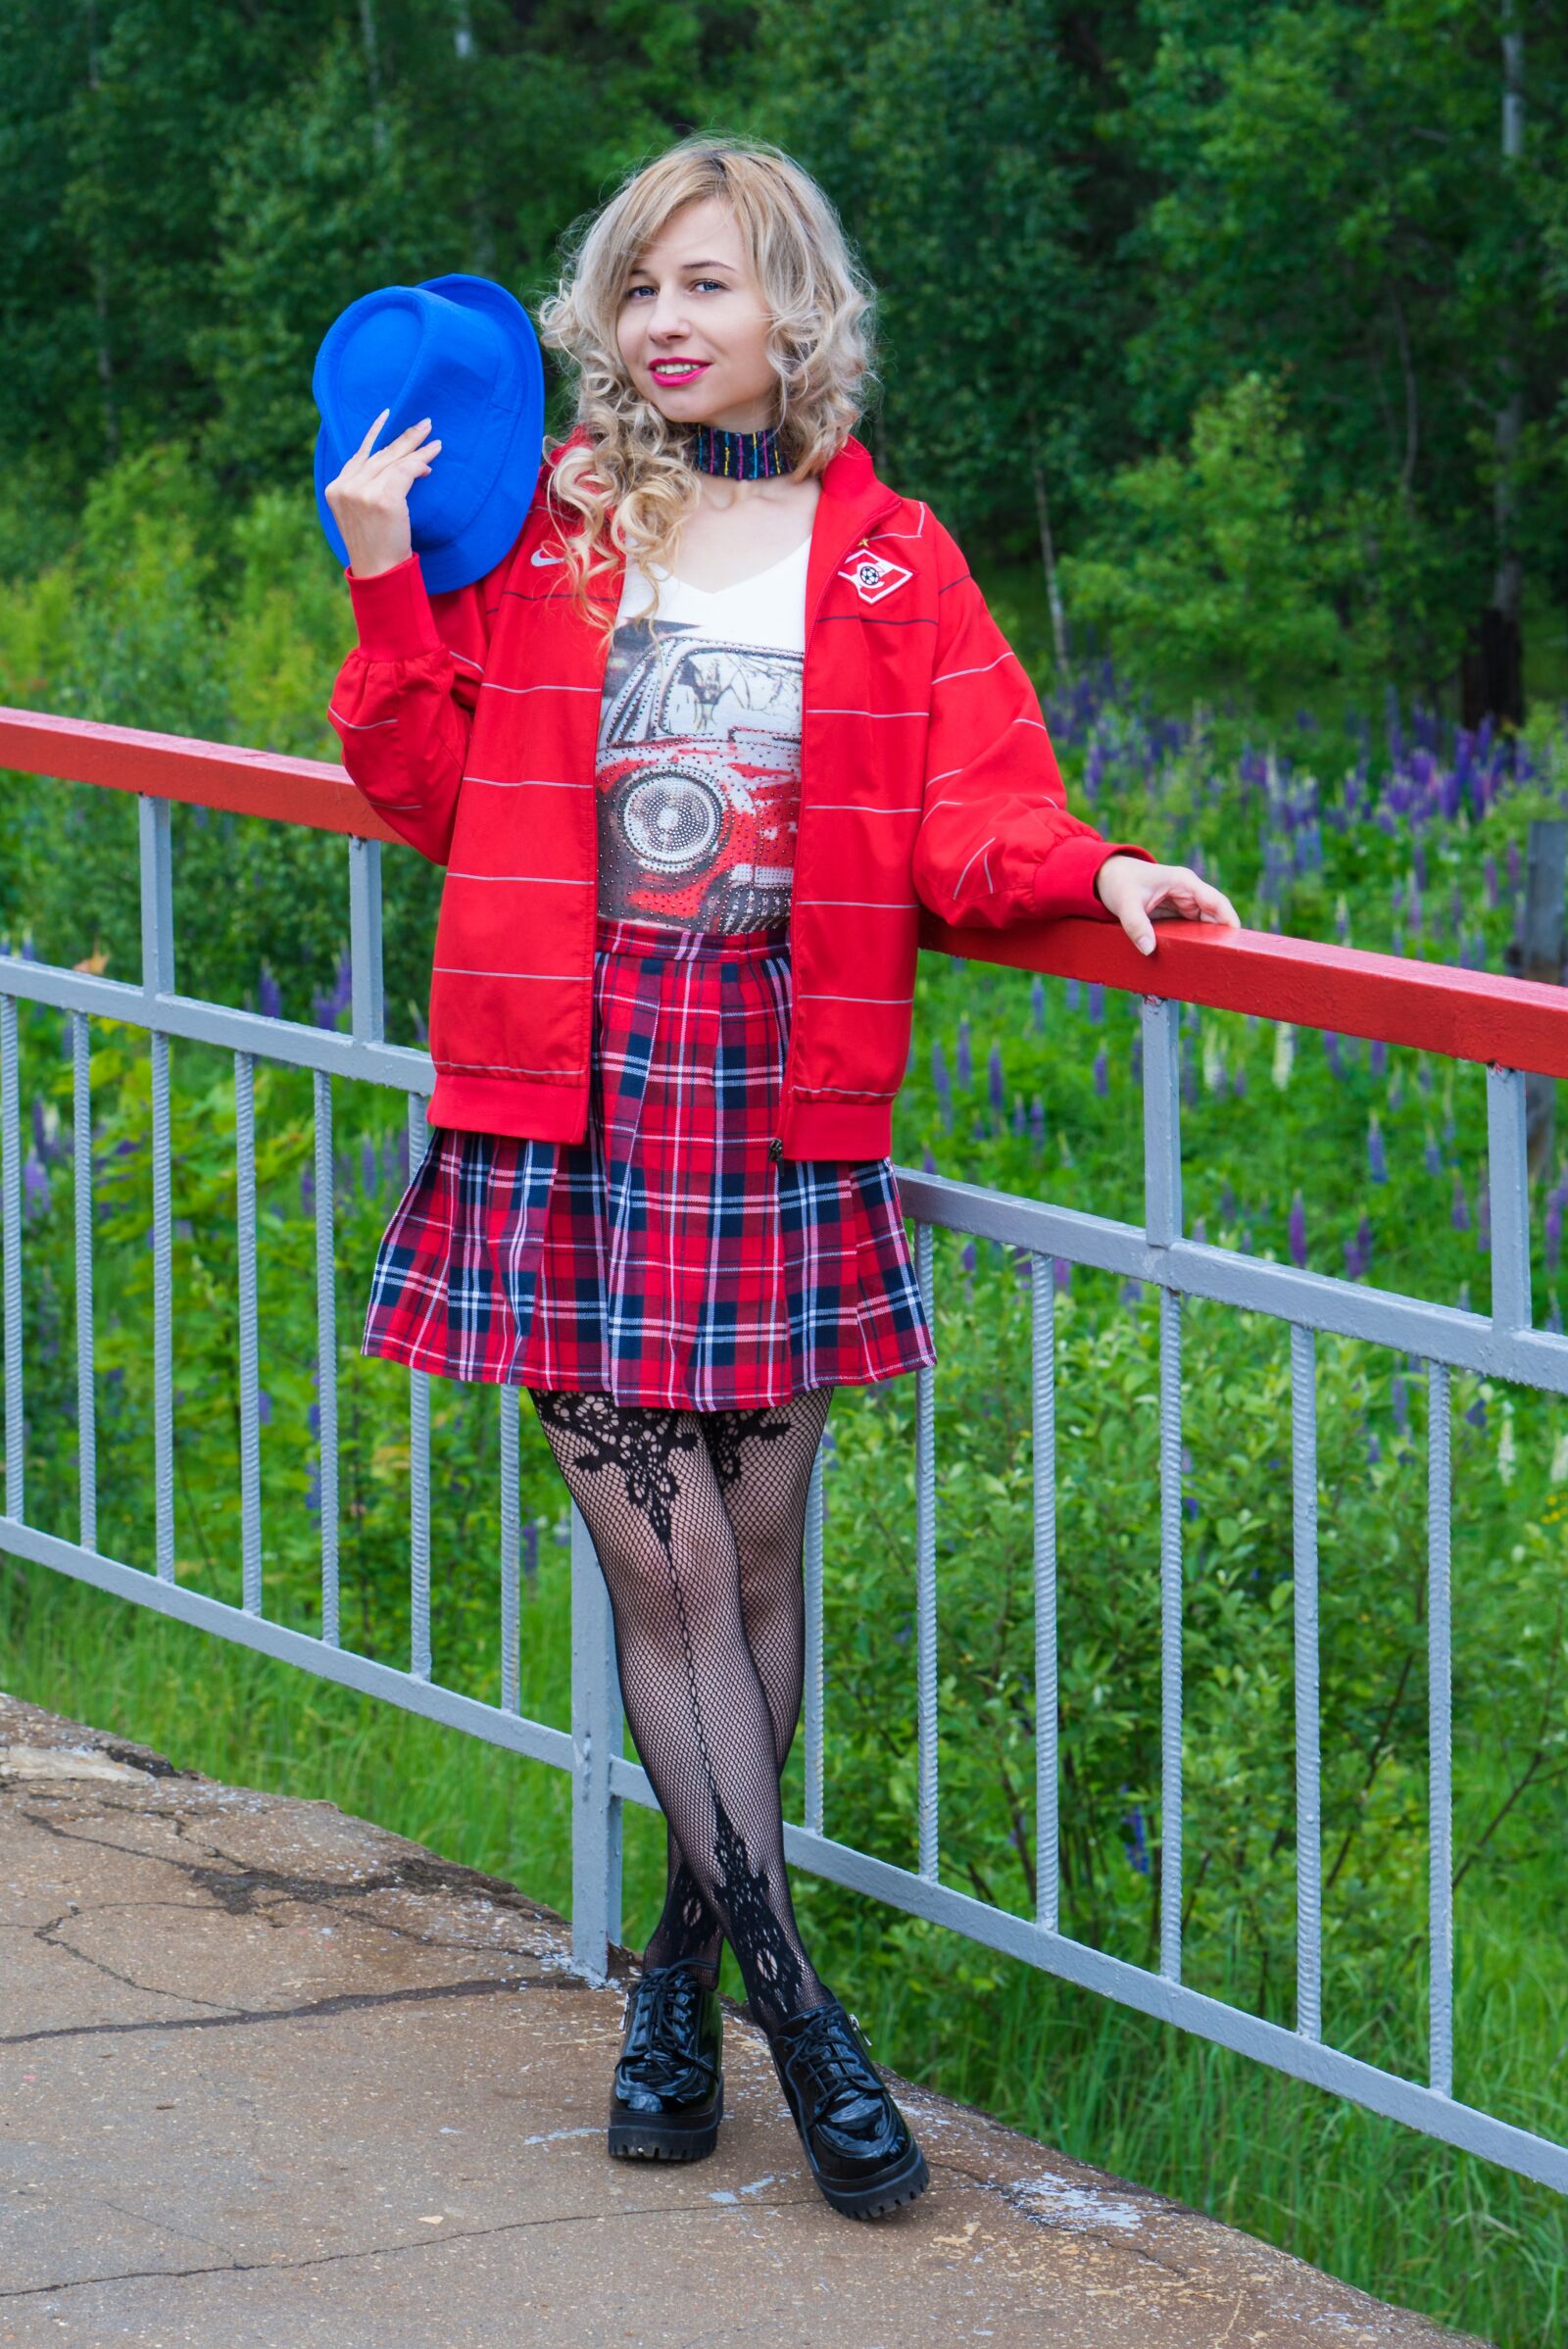 Sony a7R sample photo. Girl, school skirt, cap photography